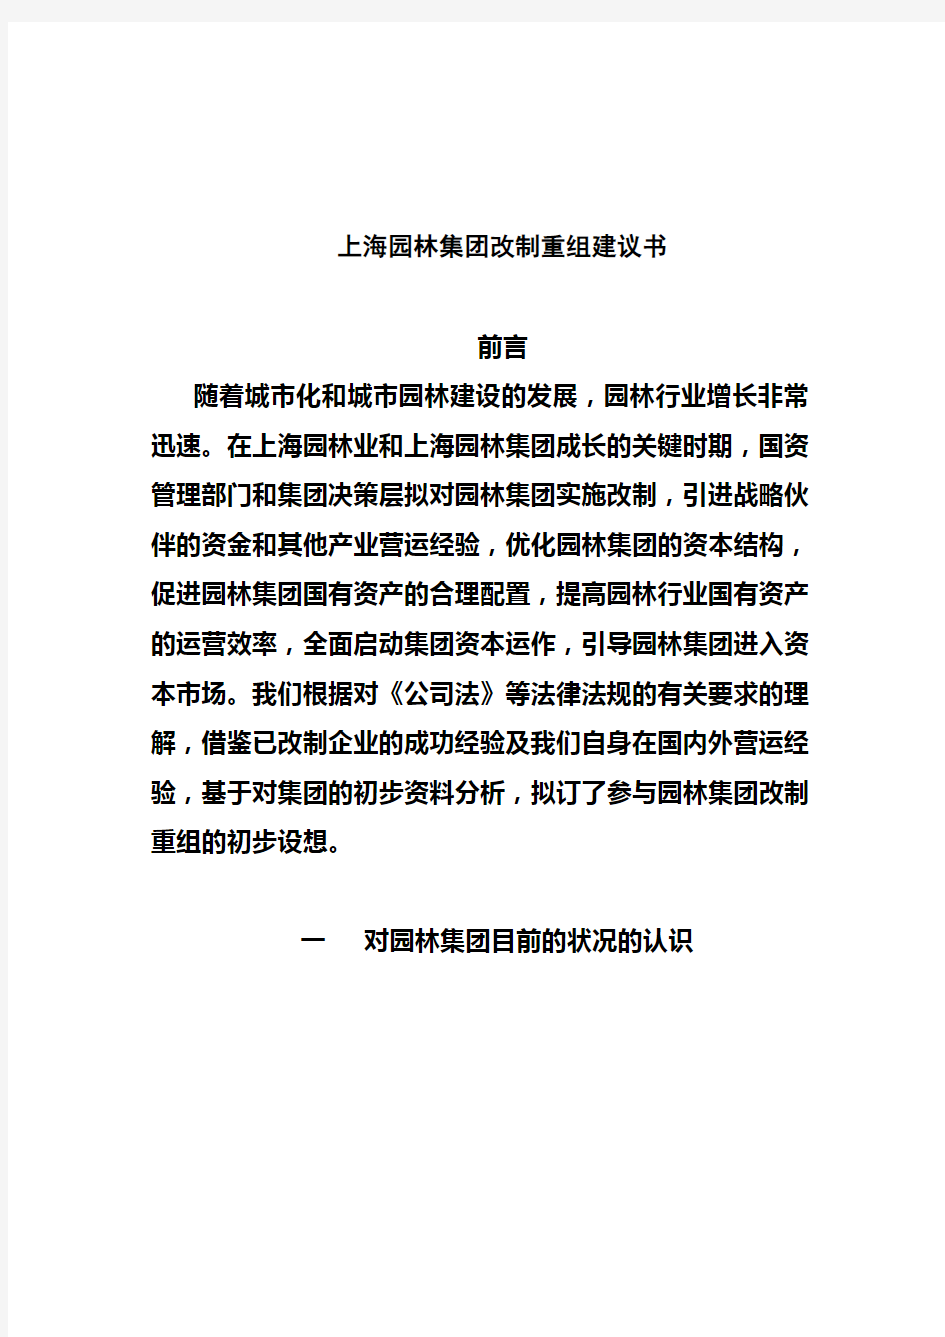 上海园林集团改制重组建议书(doc 13页)